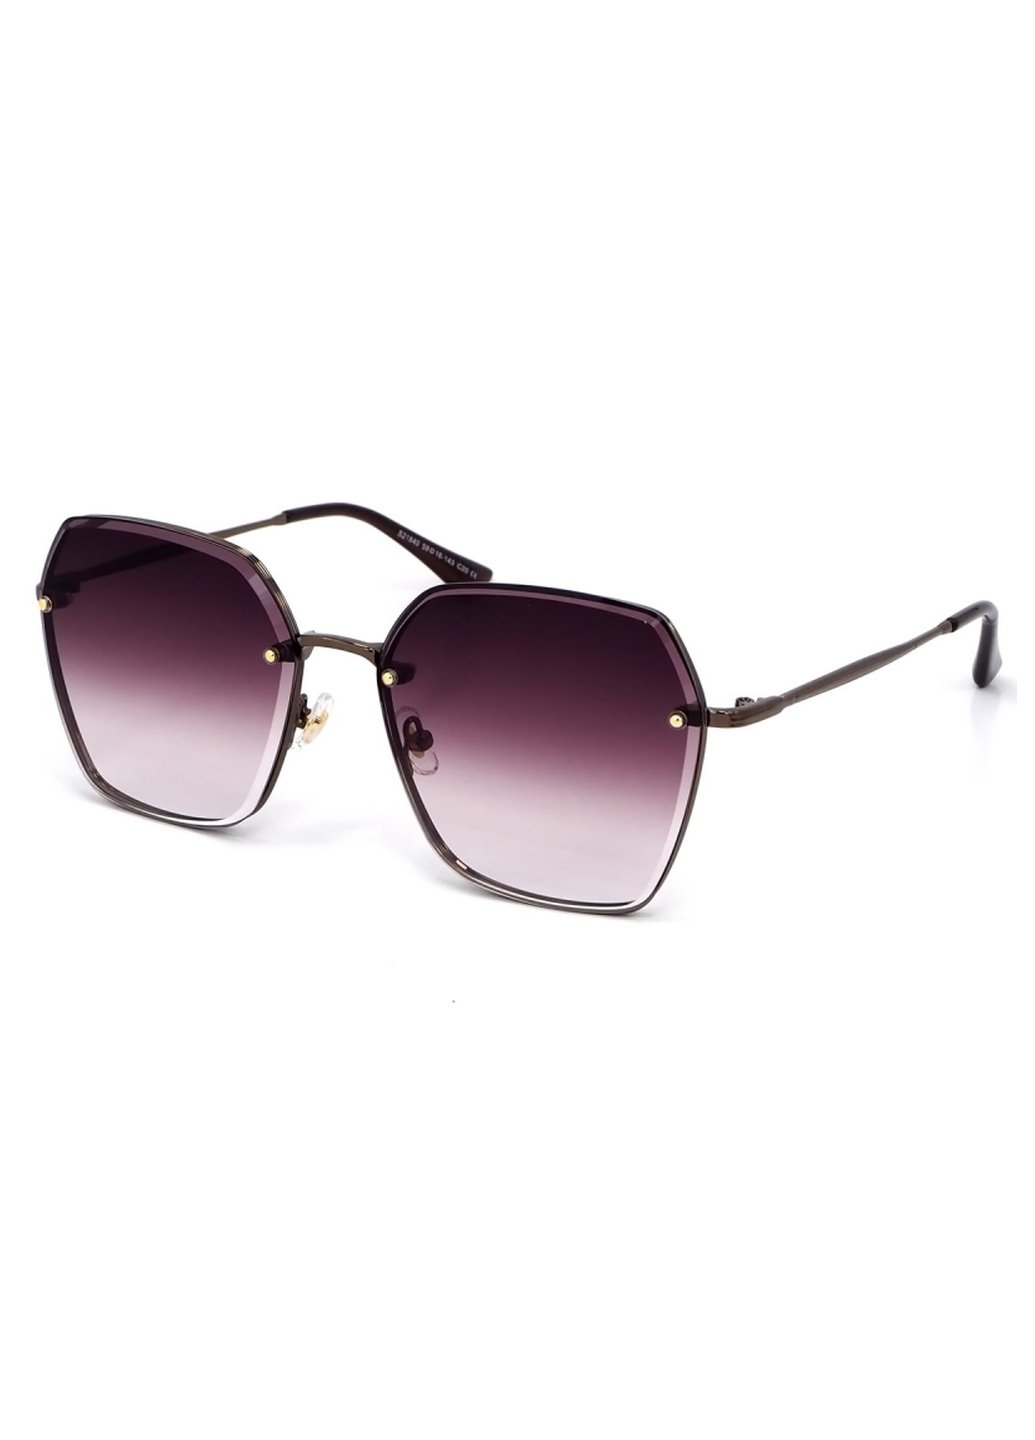 Купить Женские солнцезащитные очки Merlini с поляризацией S31840 117109 - Серый в интернет-магазине